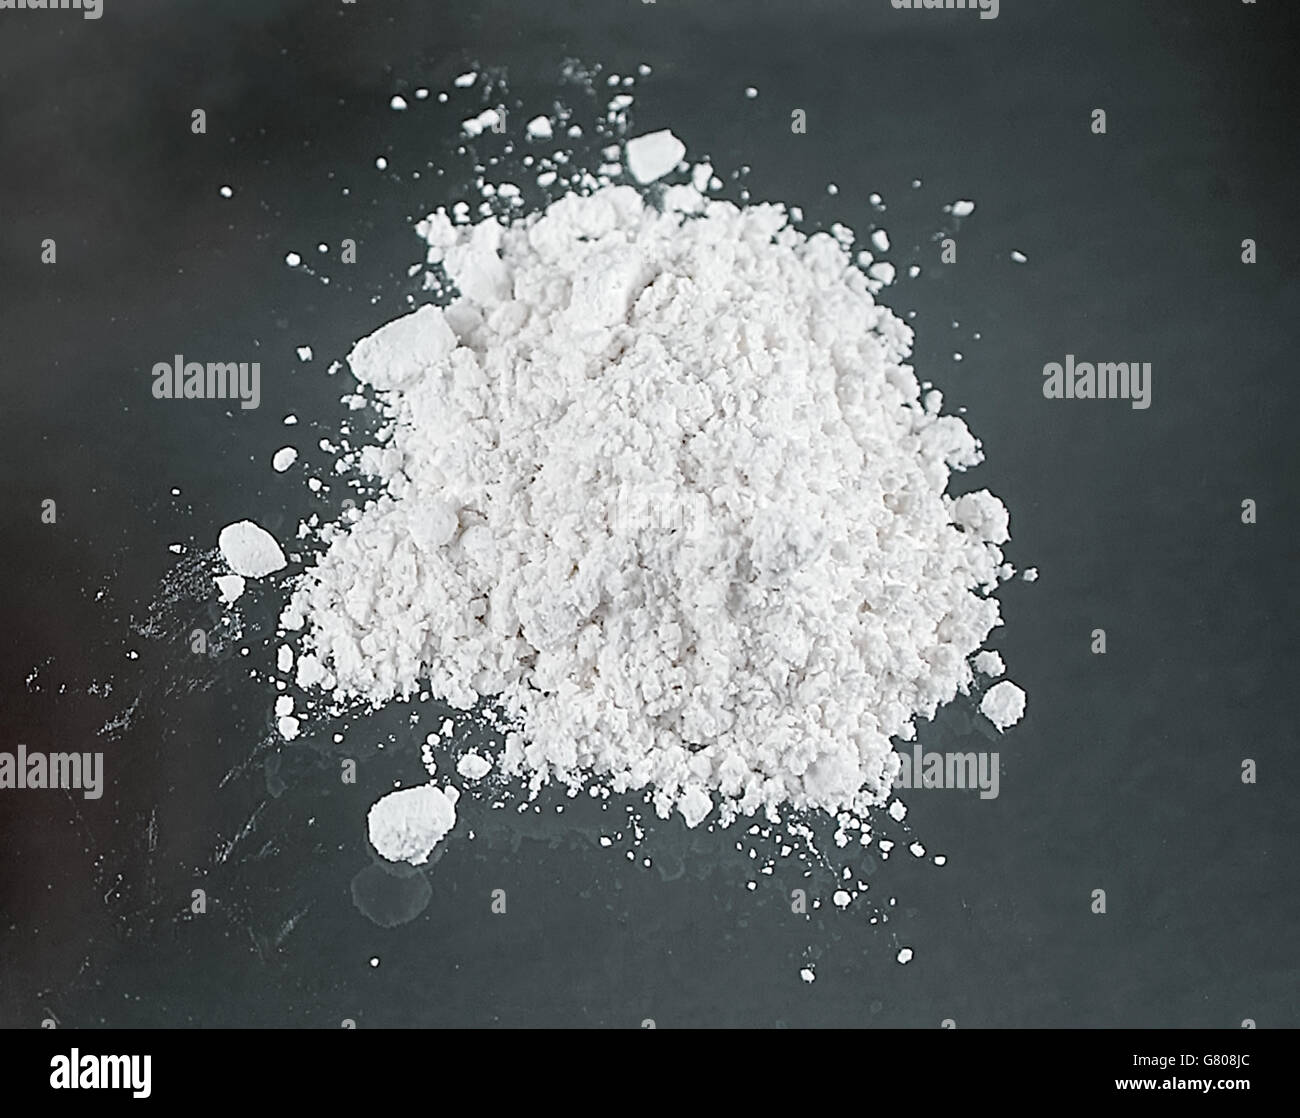 Heroin #4 Grade, bekannt als "China White", die reinste Form erhältlich und sieht aus wie ein weißes Pulver oder Salz, leicht zu lösen und zu injizieren, im Goldenen Dreieck produziert und seine größte Markt sich im Osten der USA befindet. Stockfoto